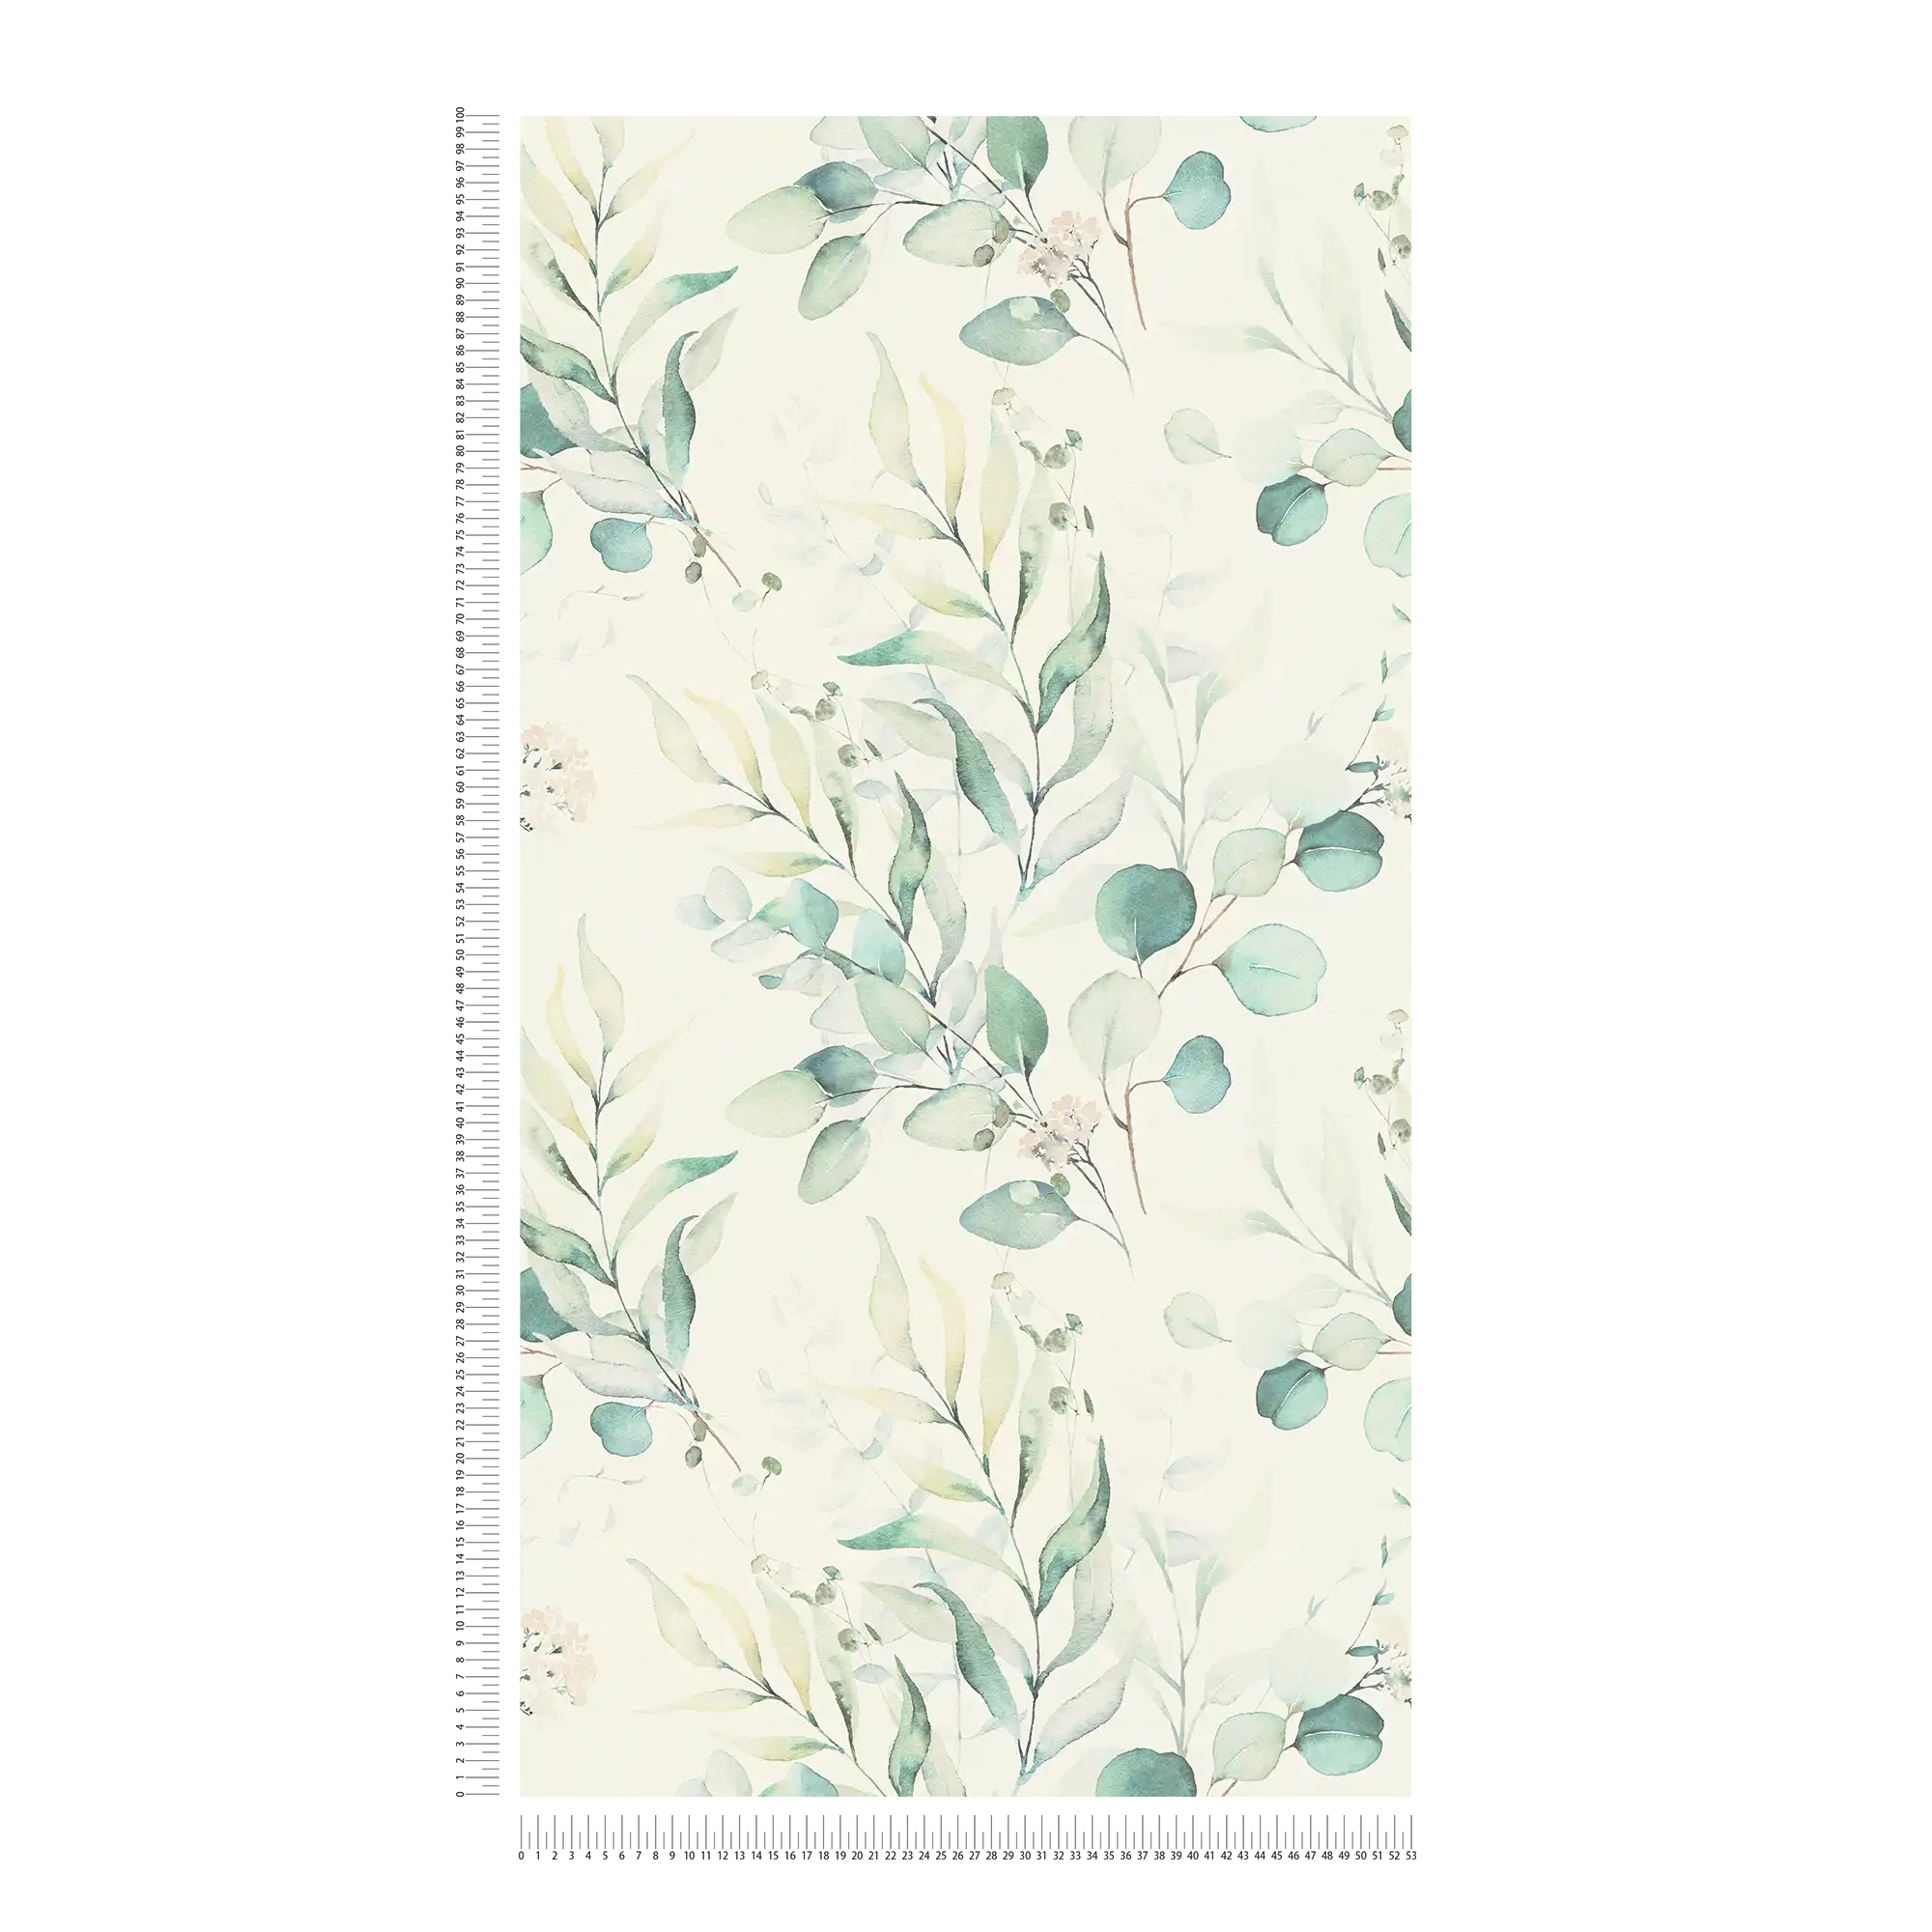             Vliesbehang met aquarel bladmotief - crème, groen
        